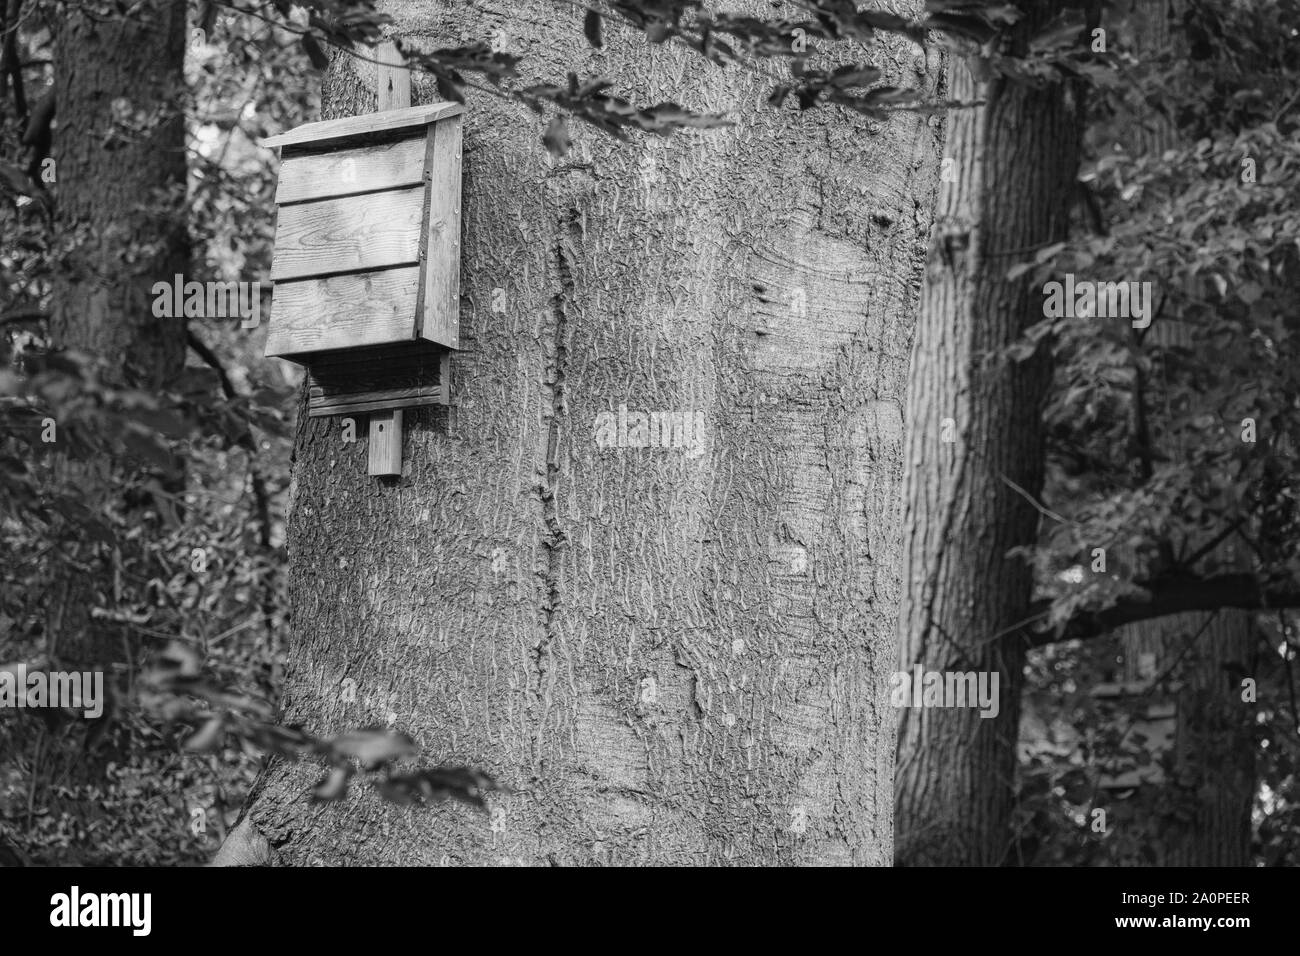 Eine Fledermaus Box hängt von einem Baum im Wald und bietet Schutz für Fledermäuse Stockfoto